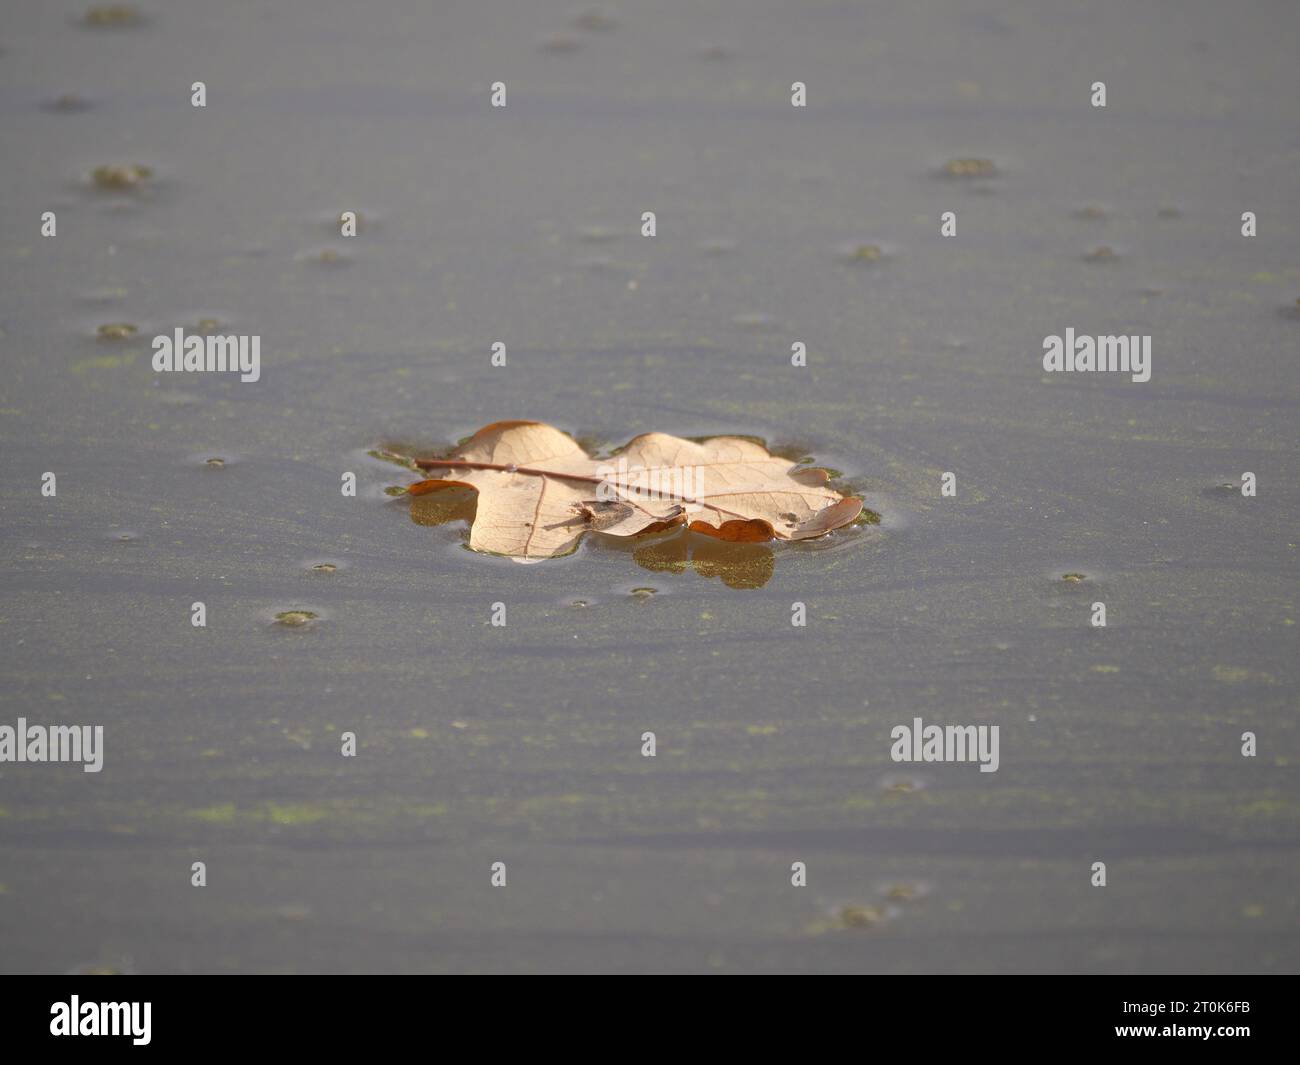 Une feuille de chêne séchée flotte à la surface de l'eau en automne Banque D'Images